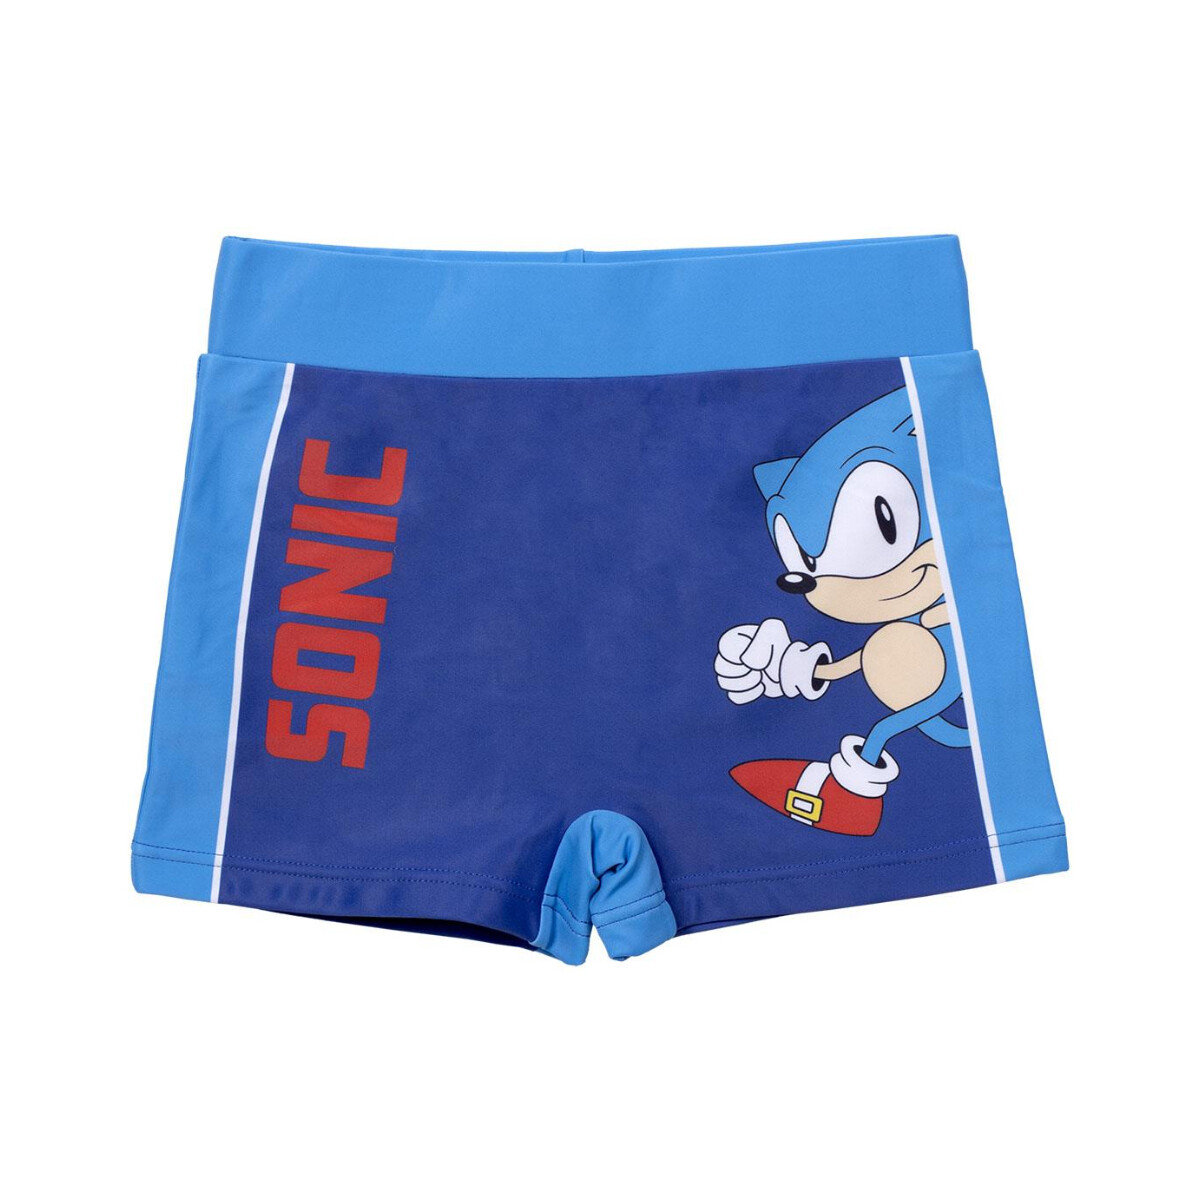 Textil Rapaz Fatos e shorts de banho Sonic 2900001262 Azul